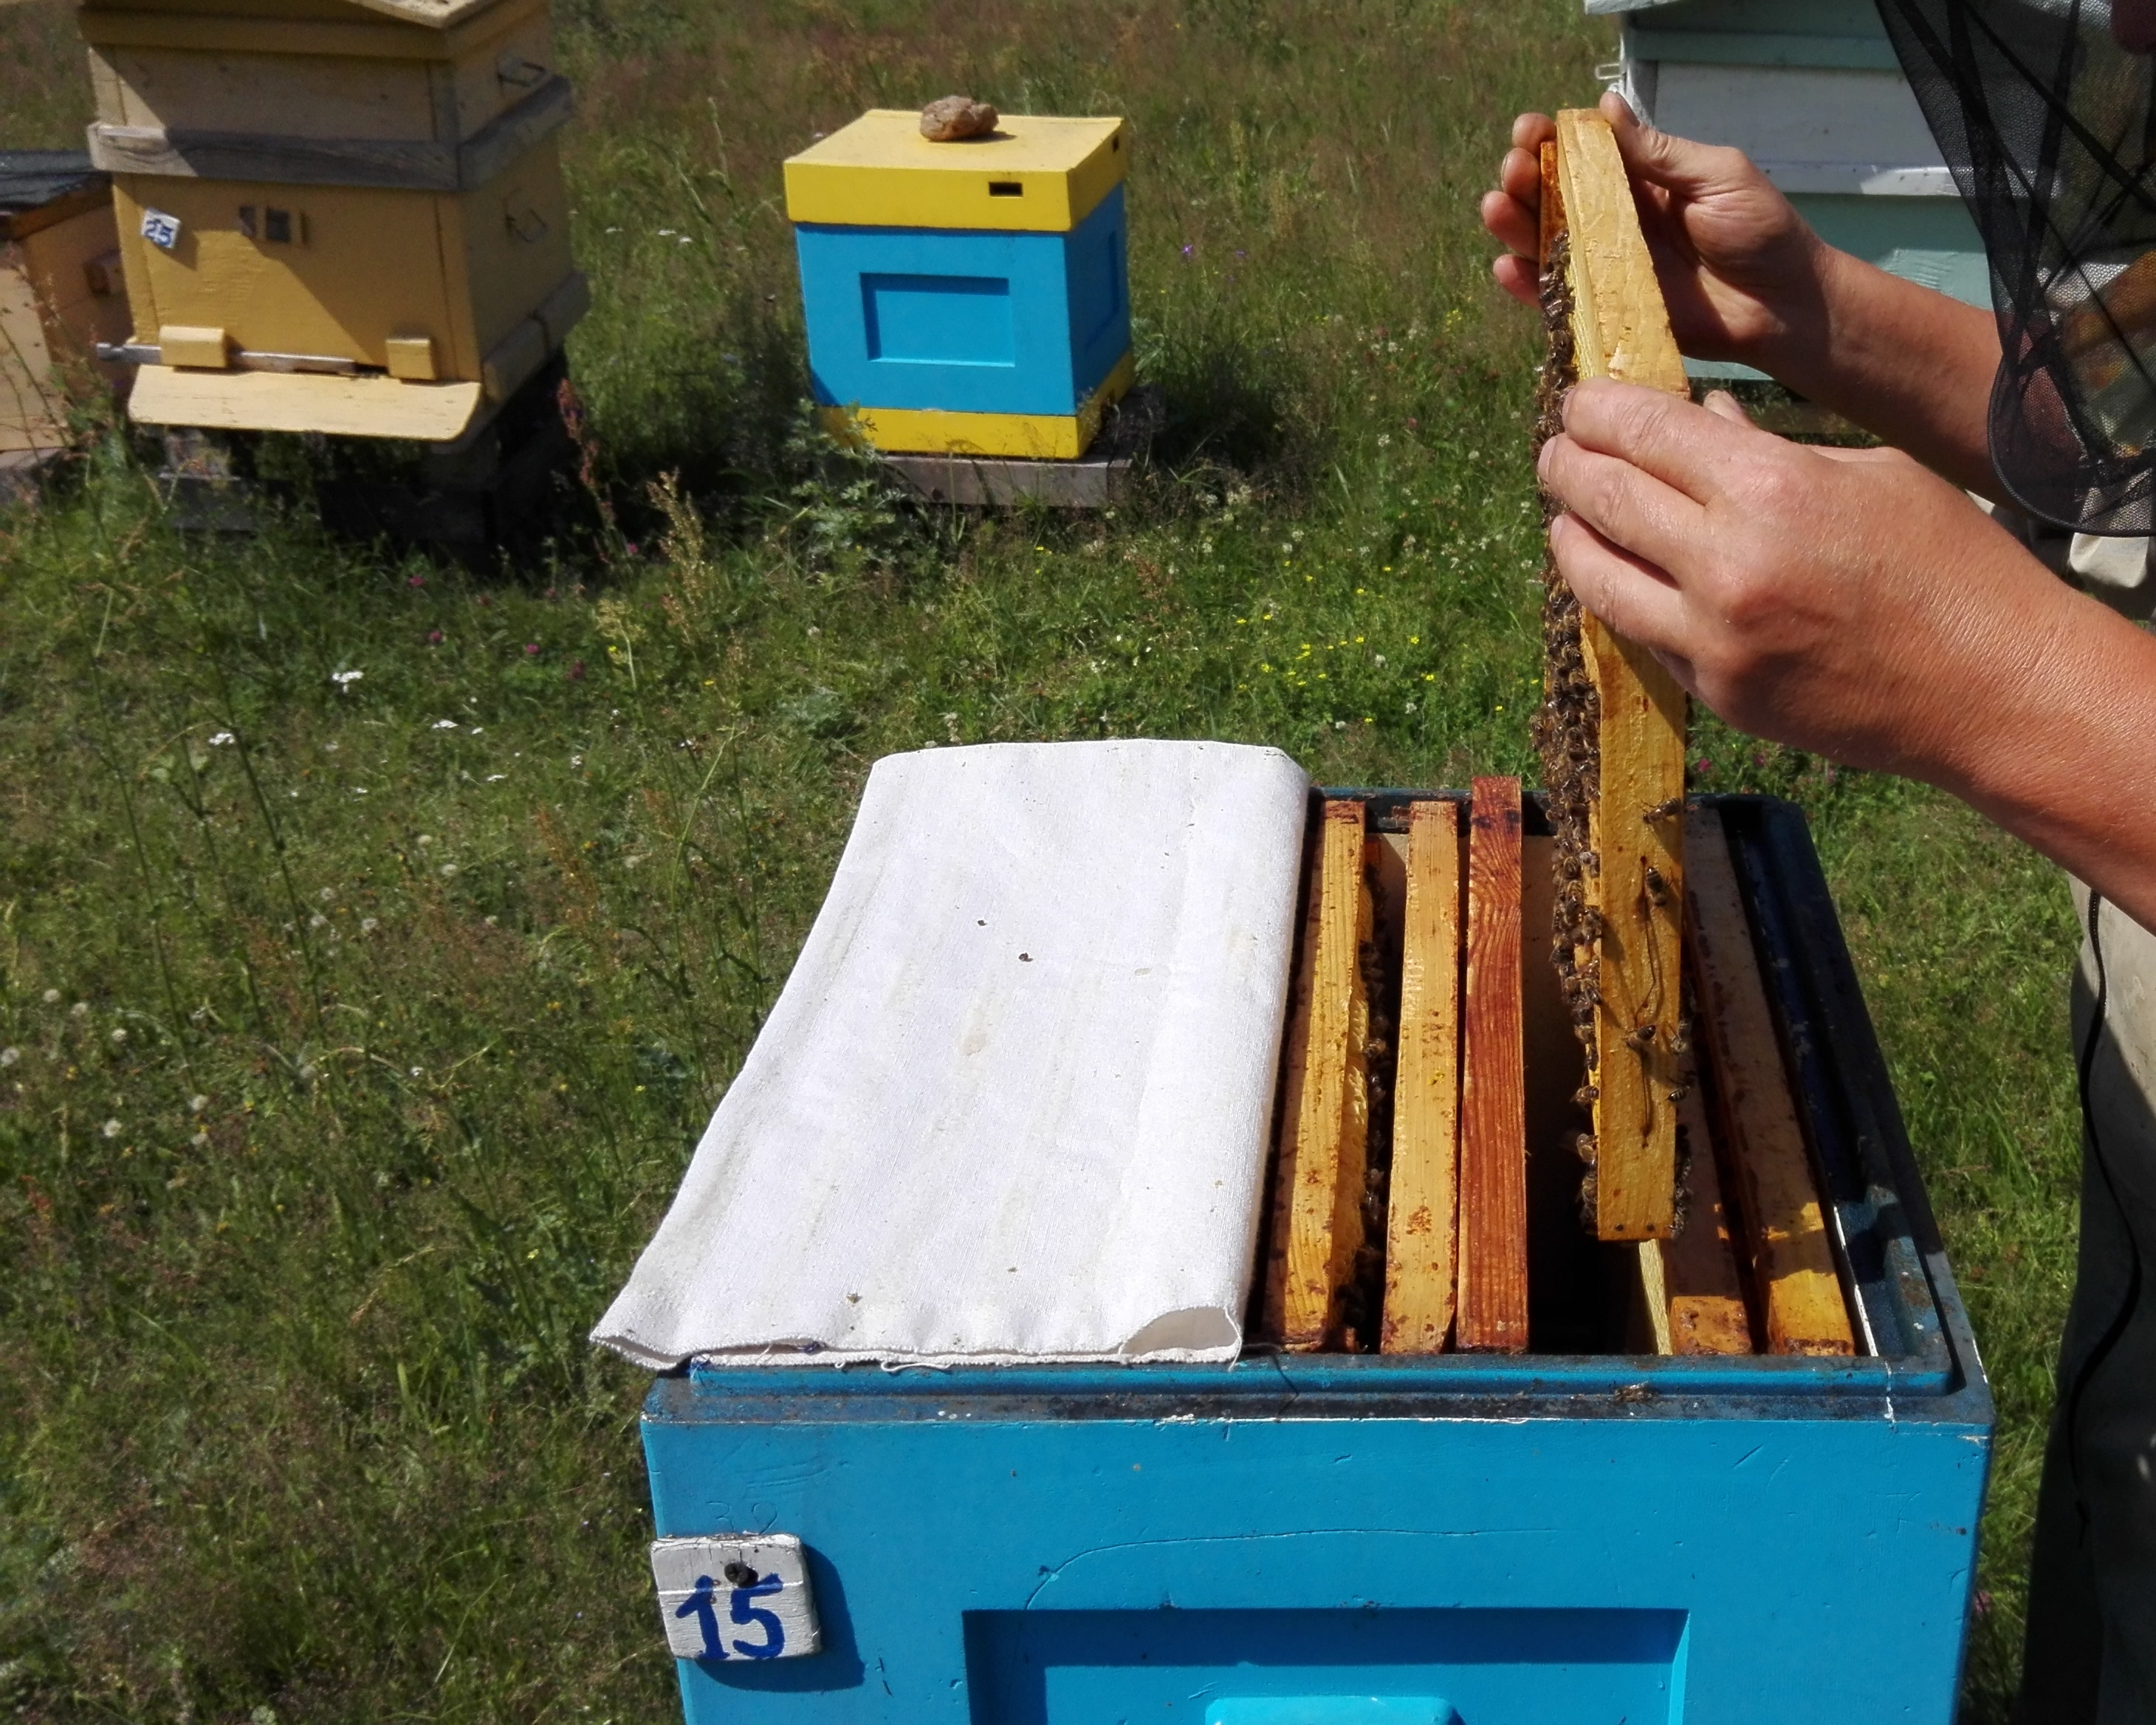 Пчелопакеты для начинающих пчеловодов